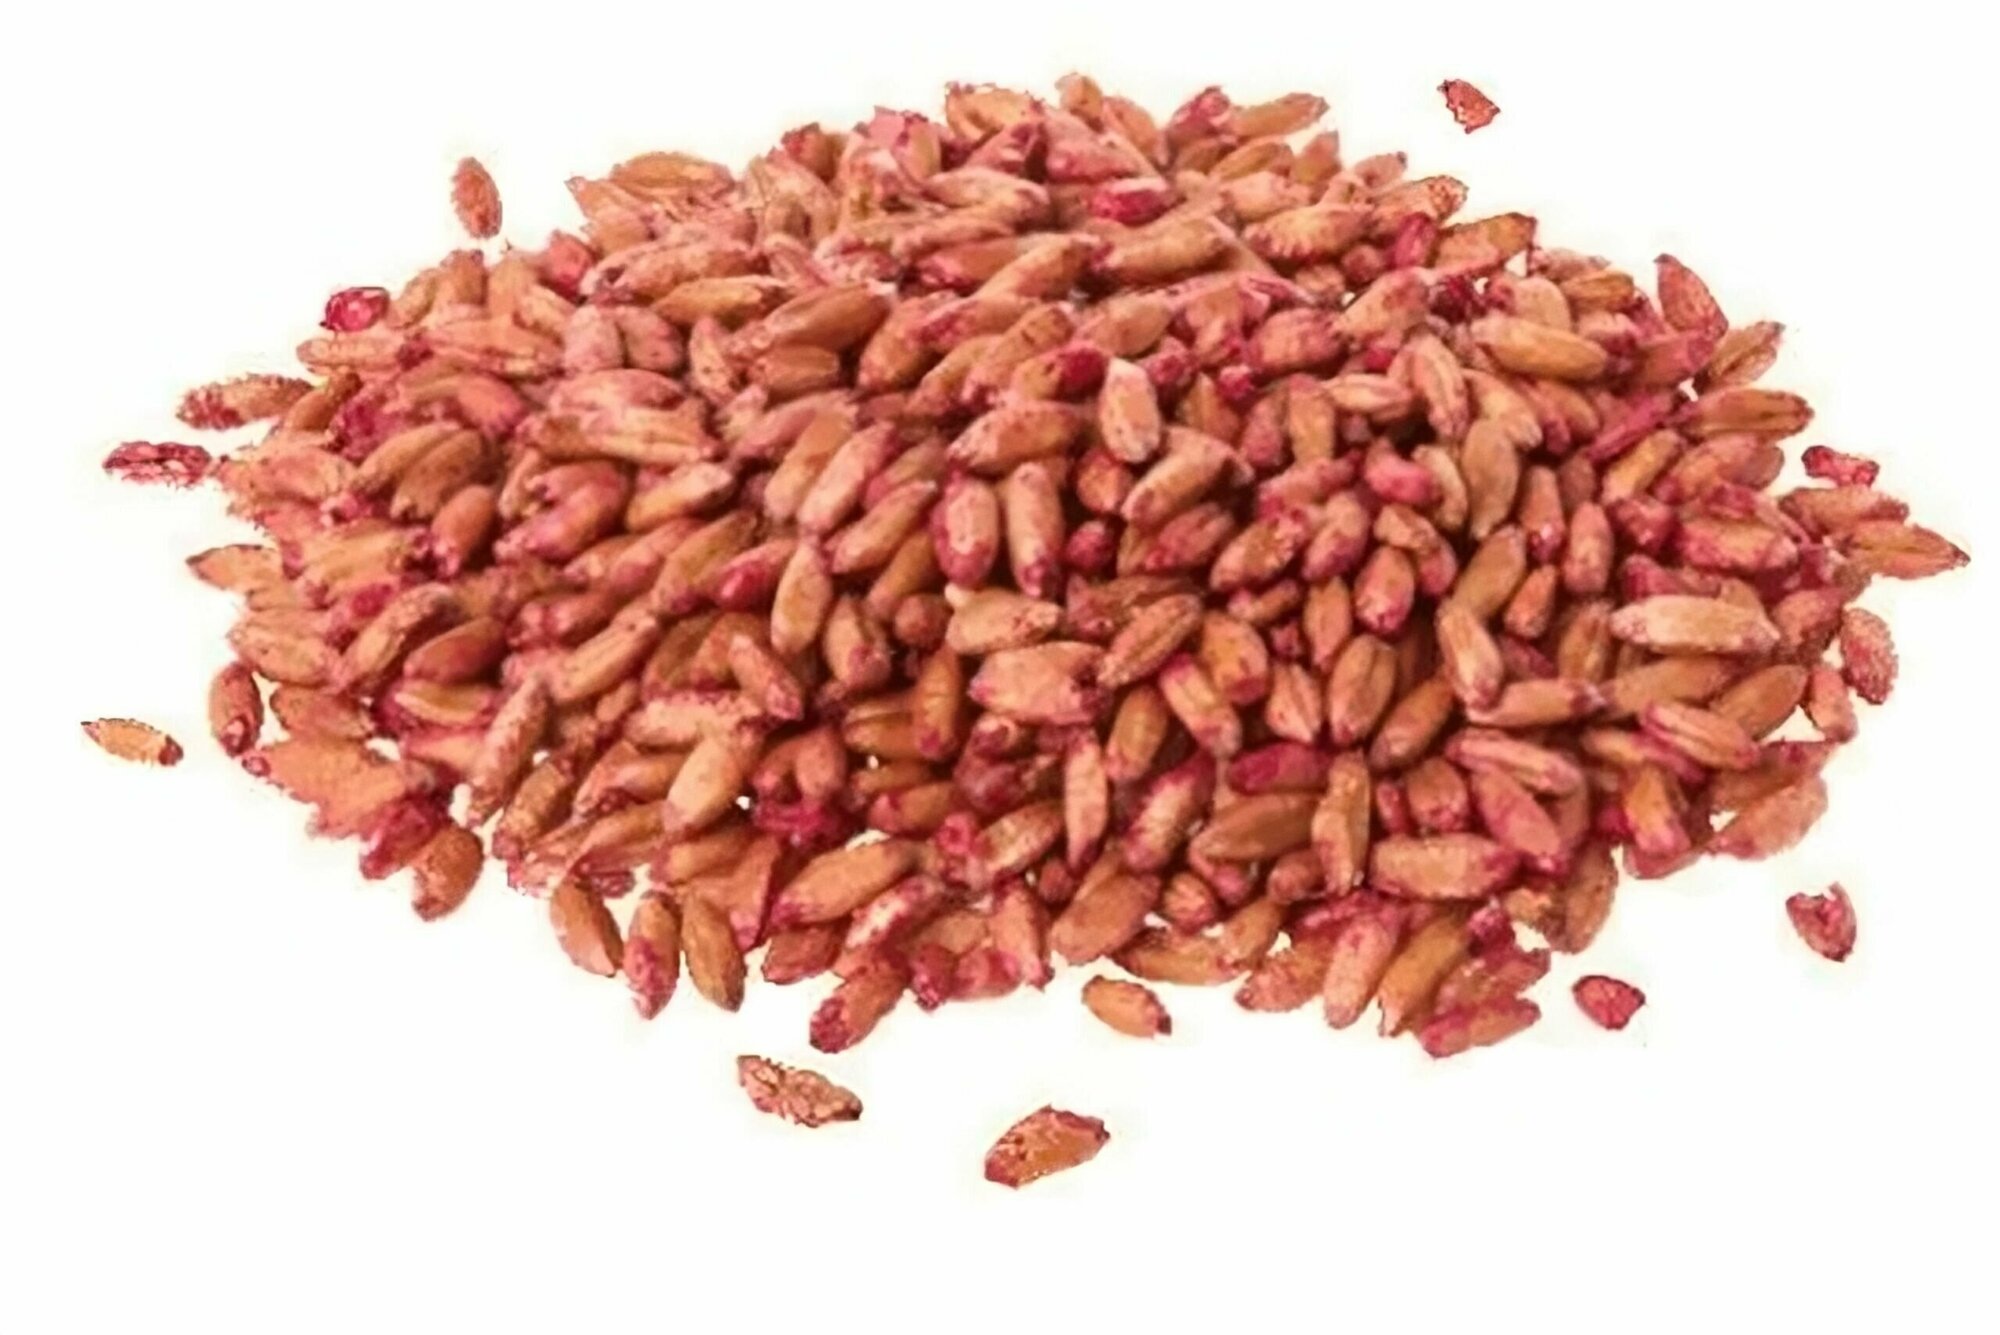 Зерно от мышей и крыс 500 гр - универсальная приманка для уничтожения грызунов. Основу составляет зерно пшеницы с добавлением кукурузы.